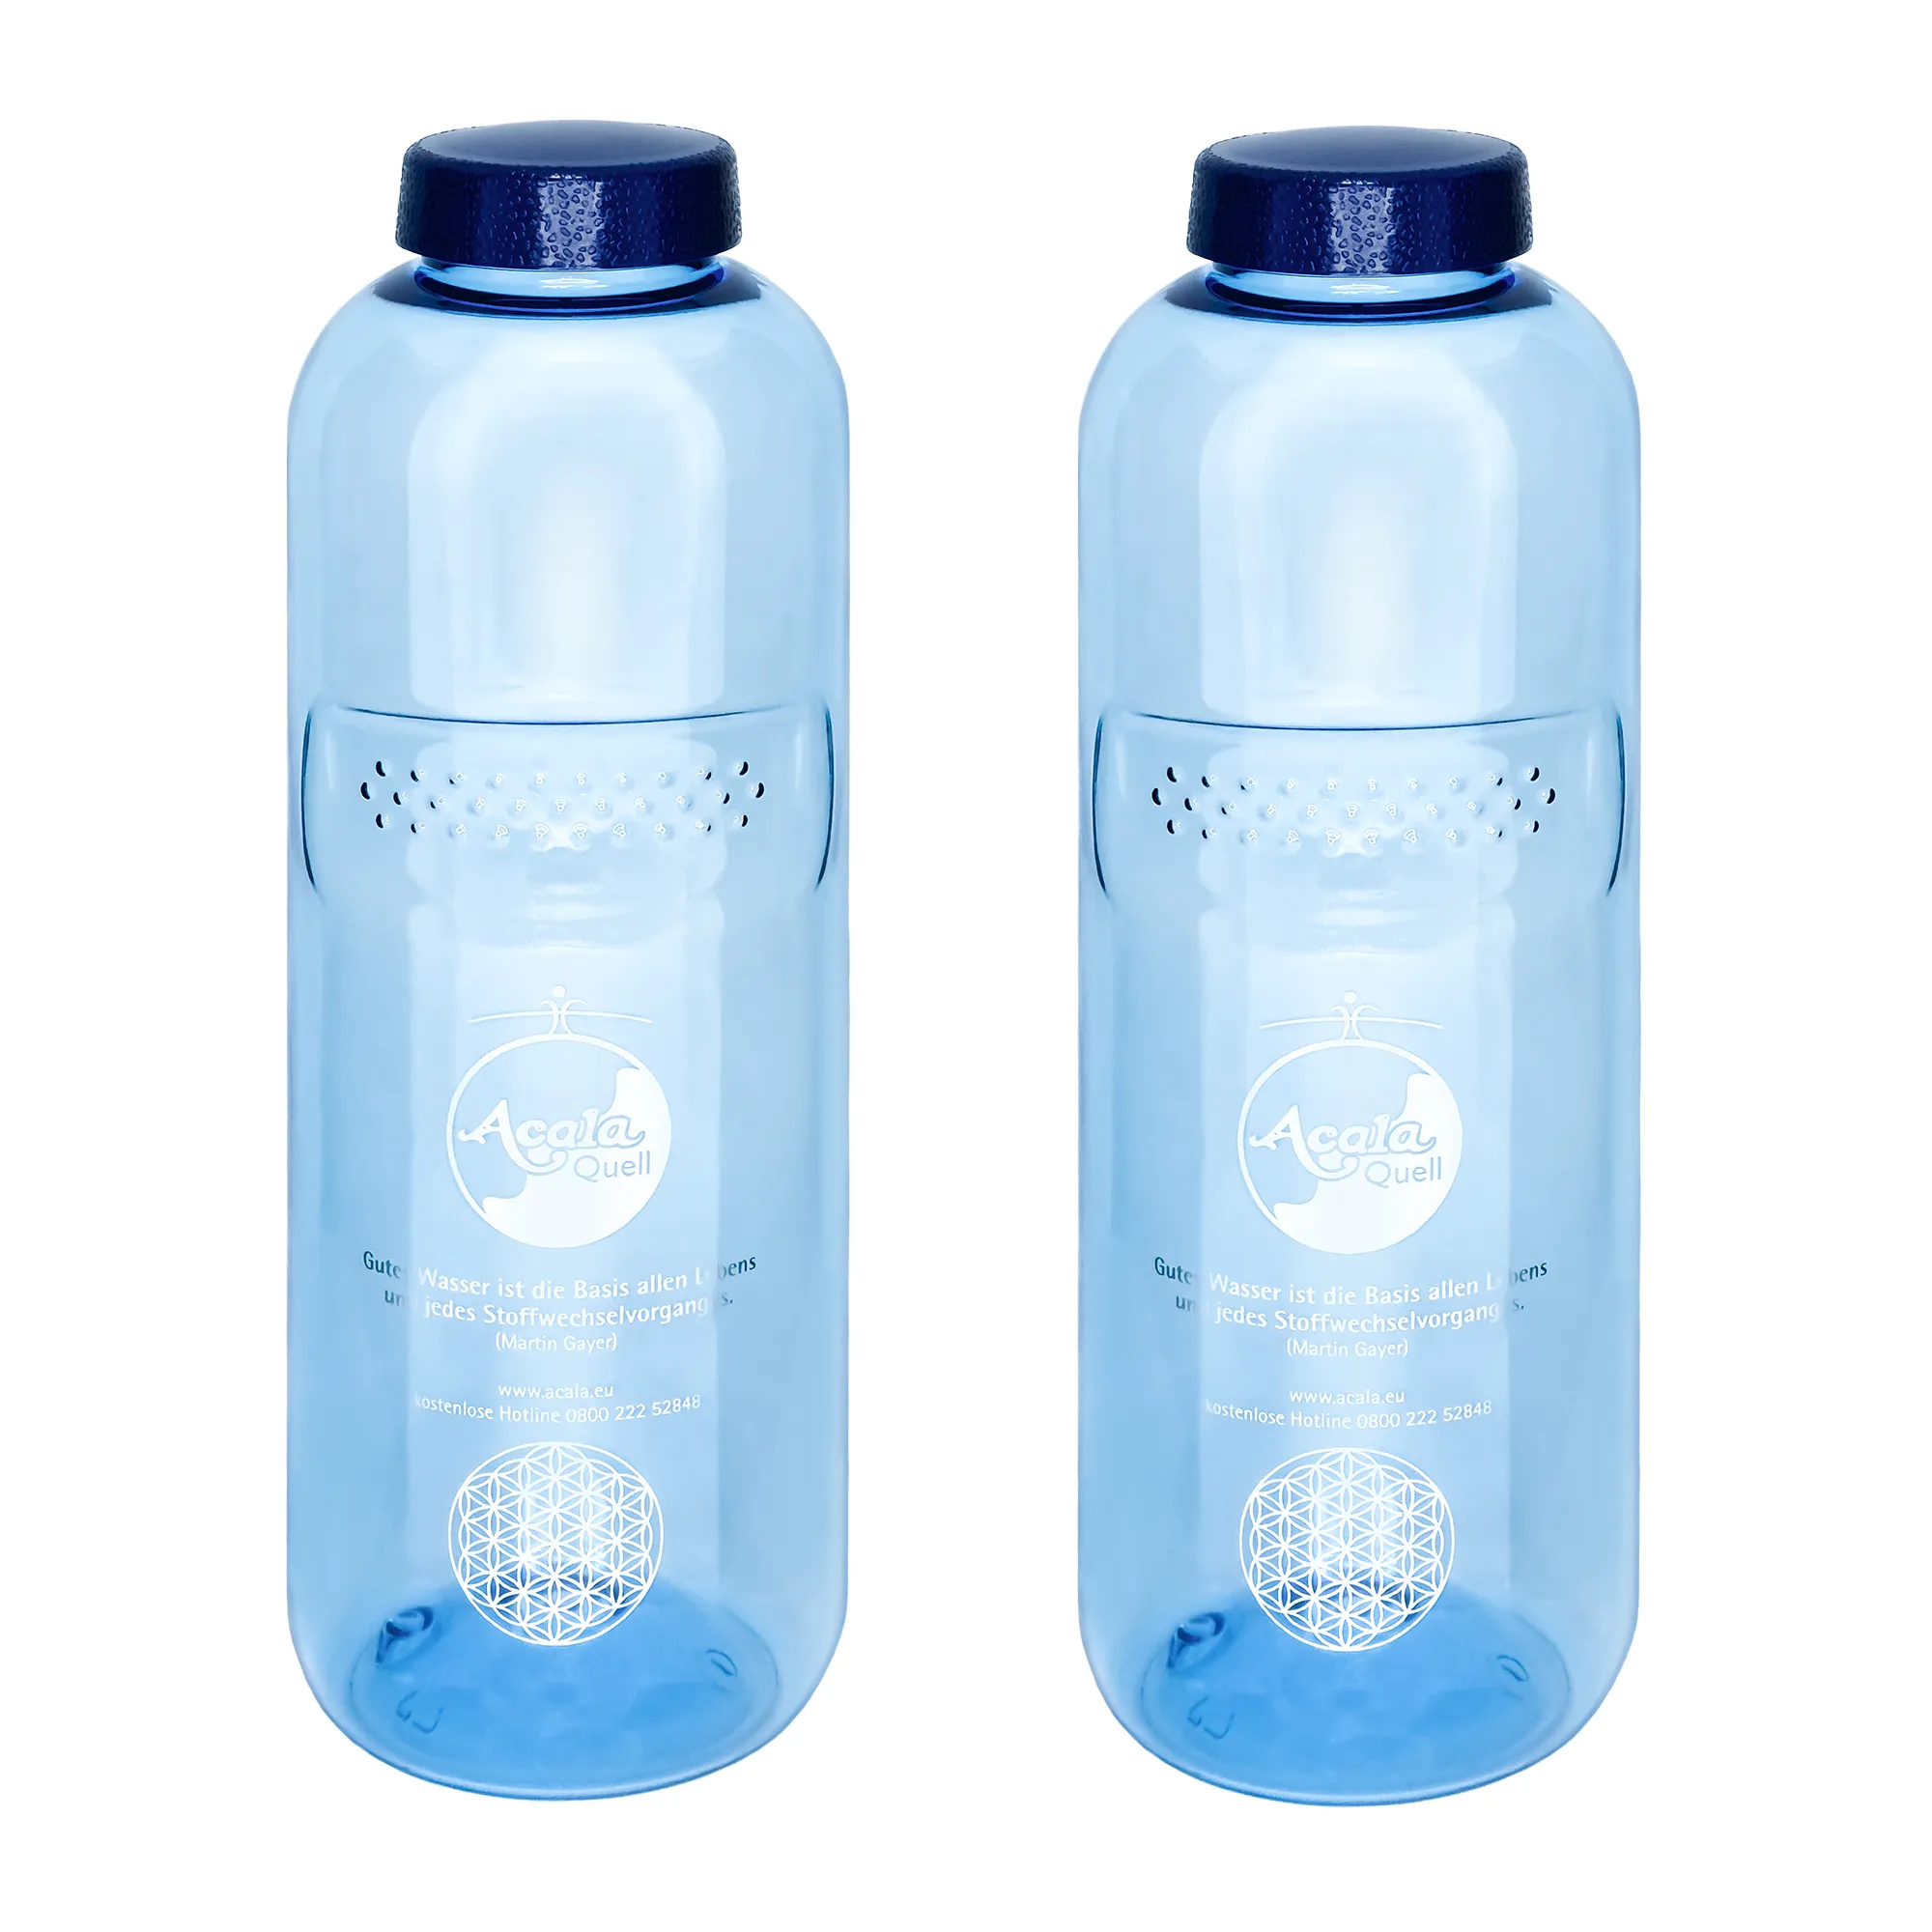 Zu sehen sind zwei blaue Tritan Trinkflaschen Grip mit dunkelblauem Schraubdeckel vor weißem Hintergrund. Man sieht ein silbernes Acala Logo und die Blume des Lebens auf den Flaschen.